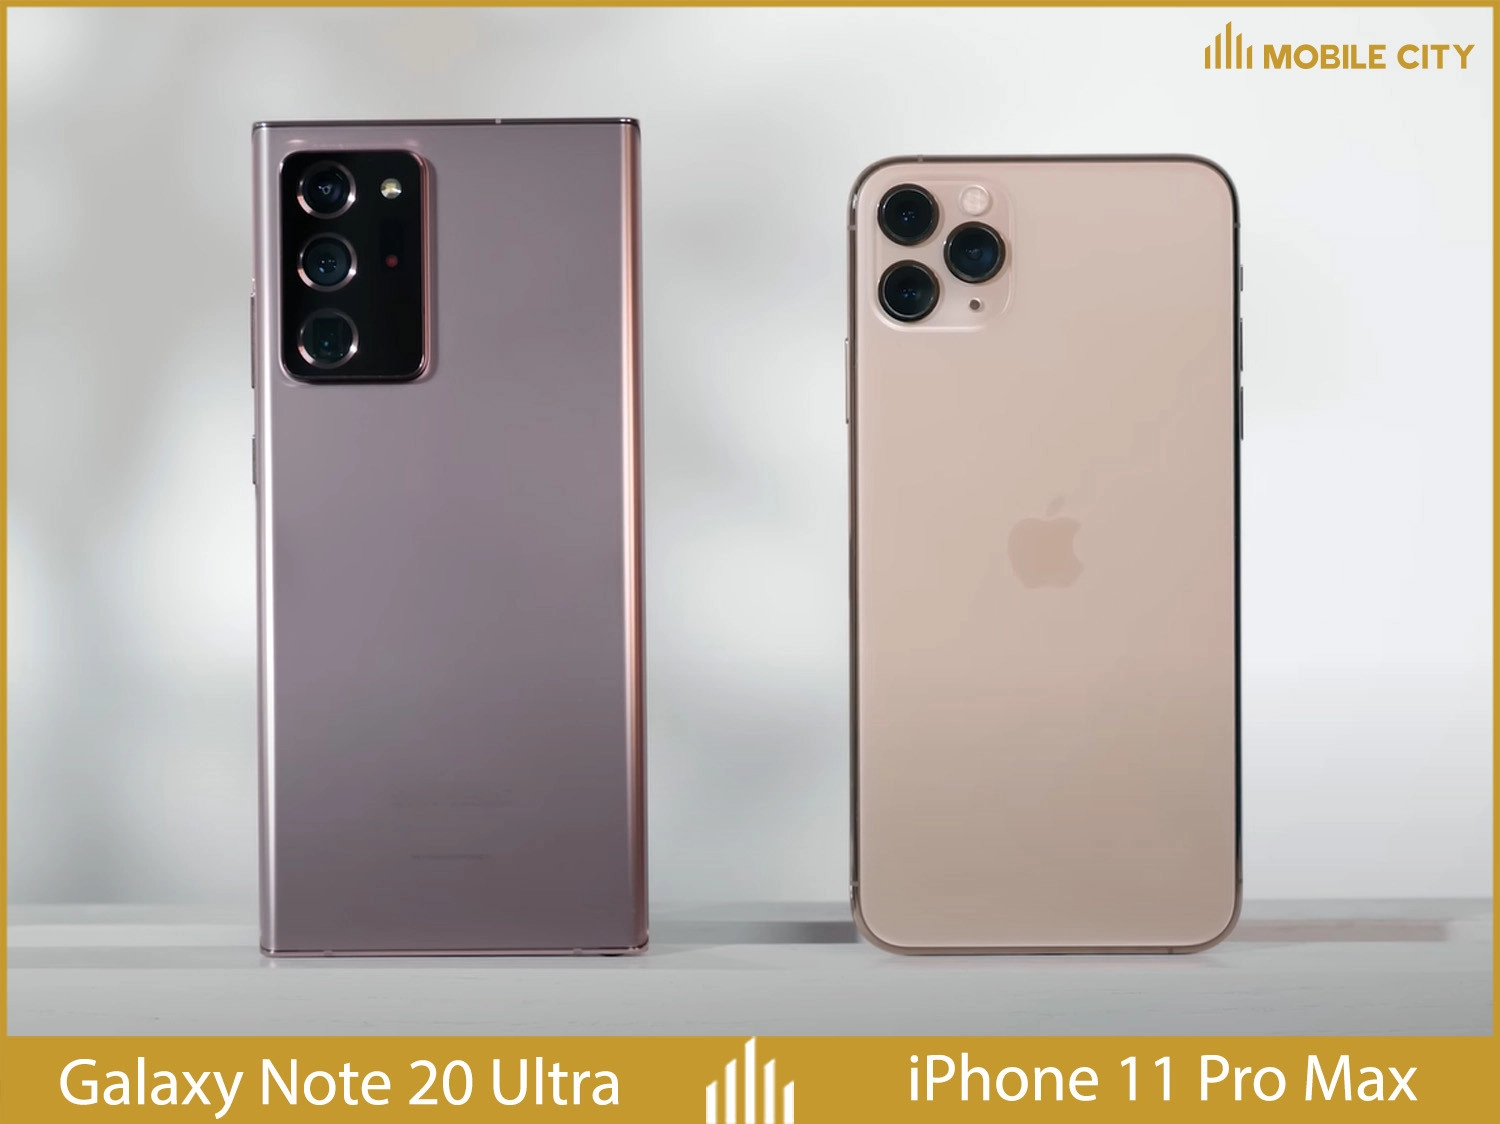 iphone-11-pro-max-cu-so-voi-galaxy-note20-ultra-cu-01